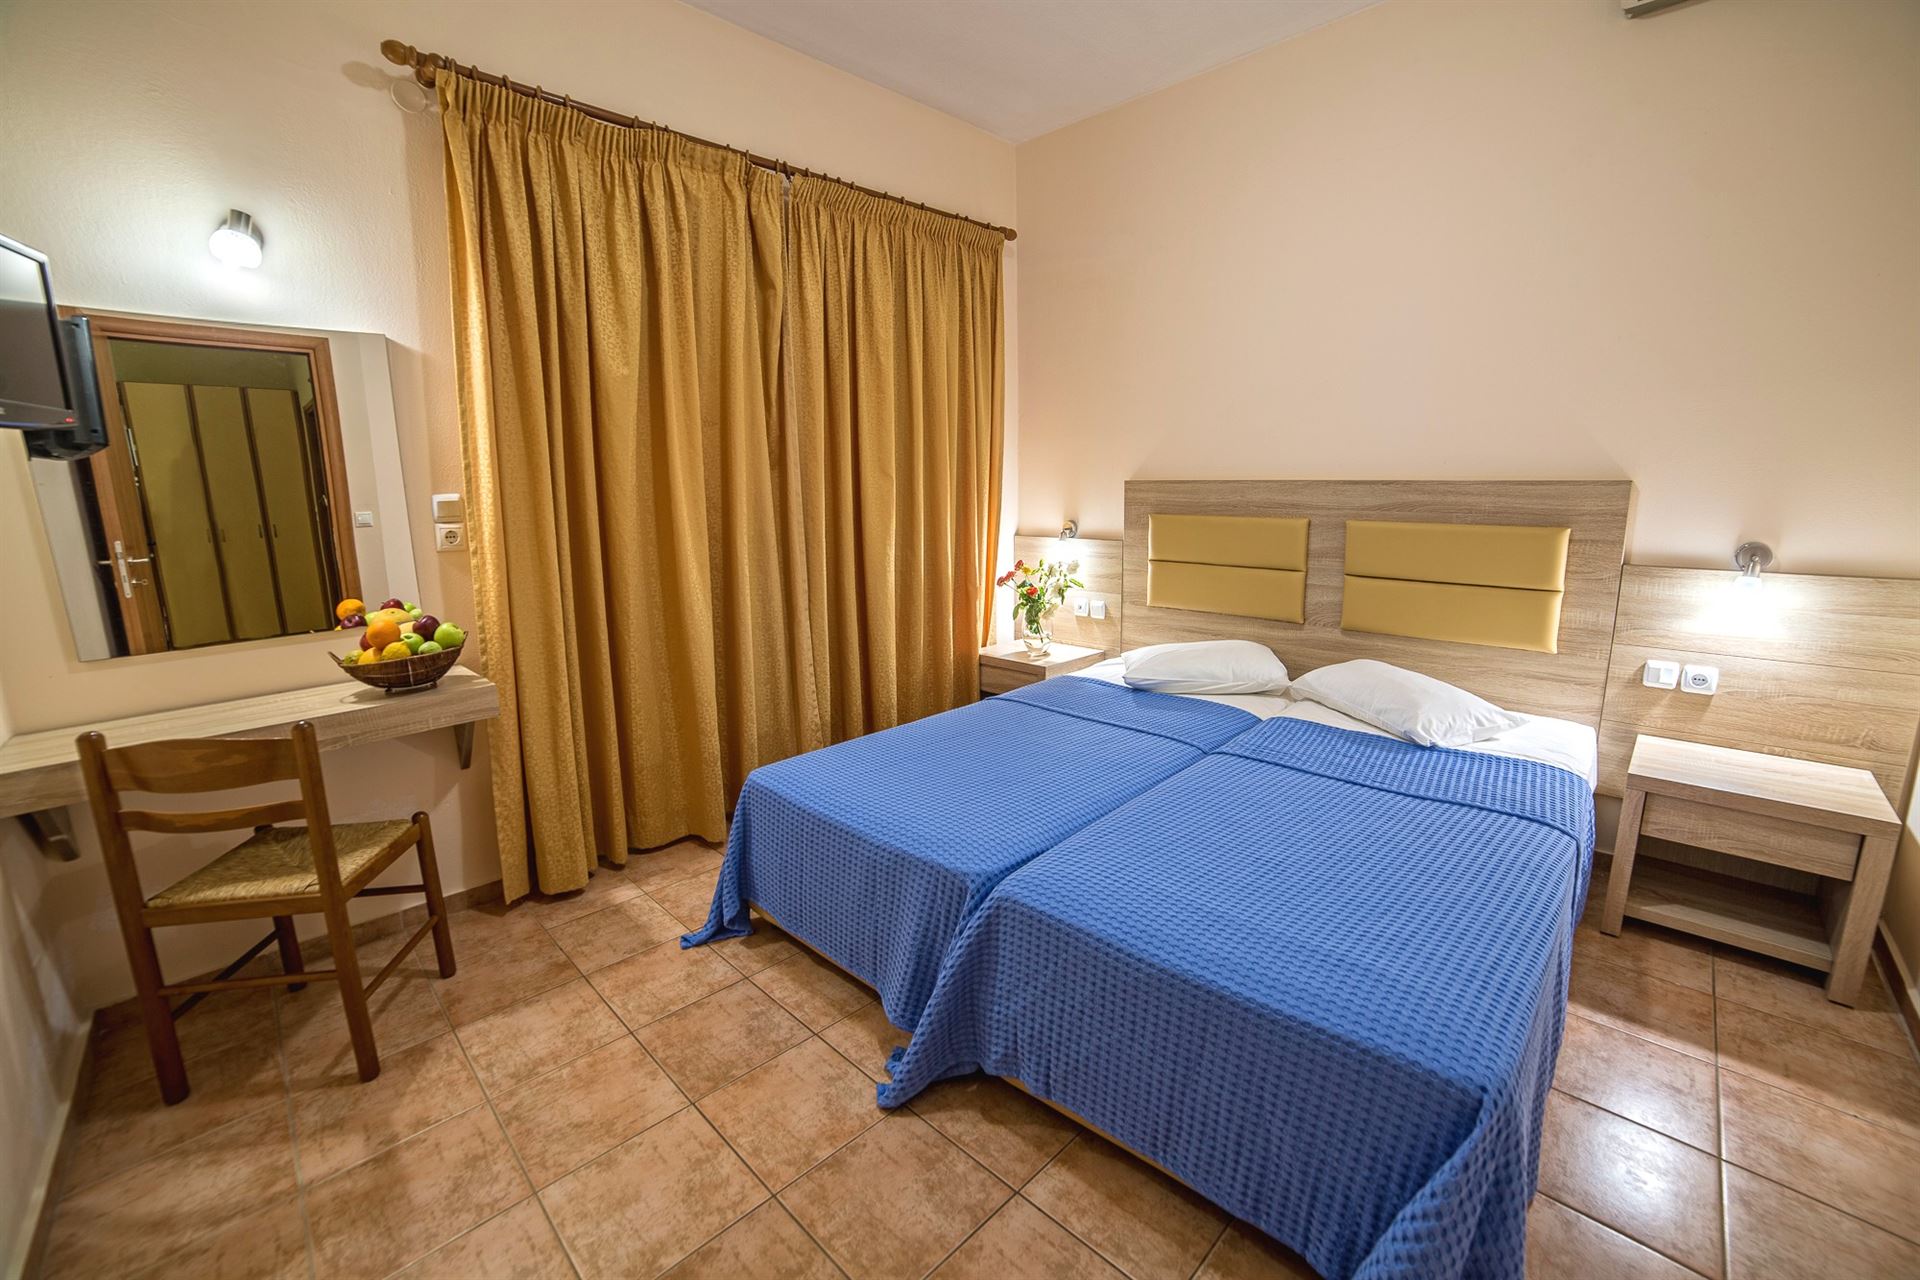 Blue Aegean Suites & Apart Hotel